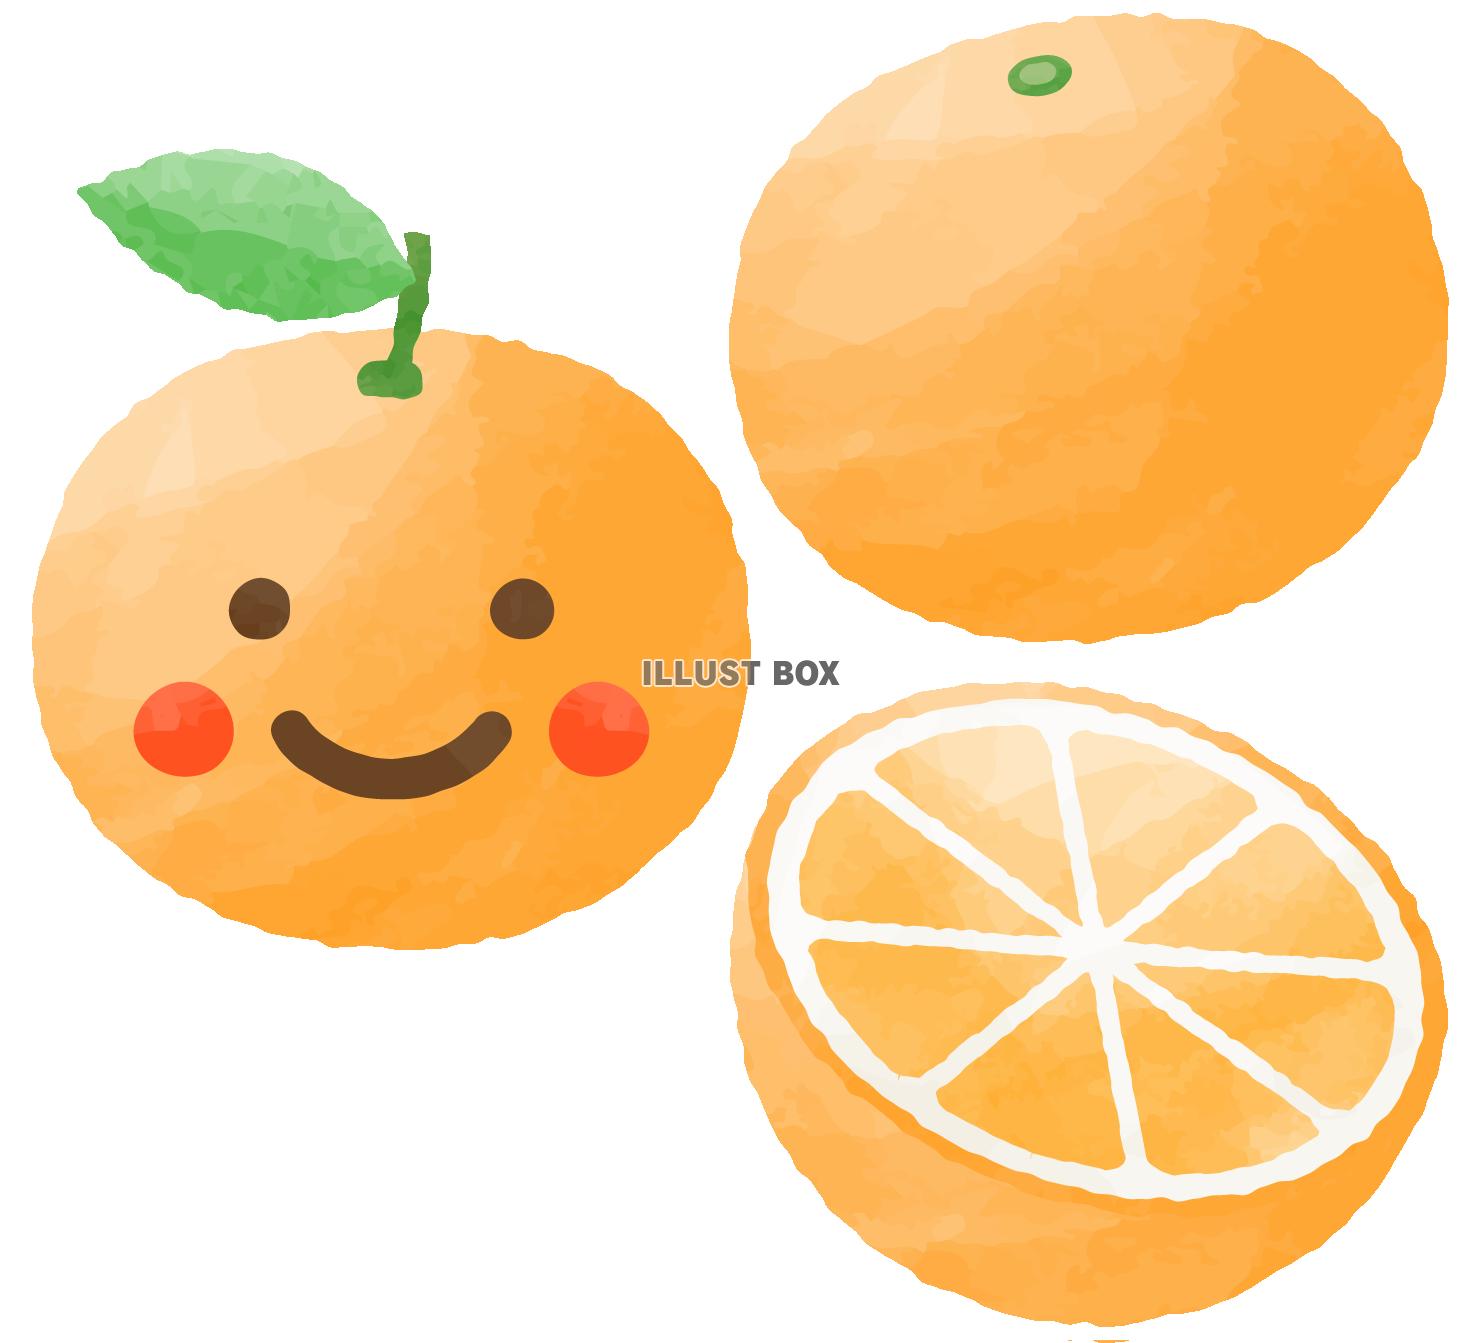 笑顔のオレンジ